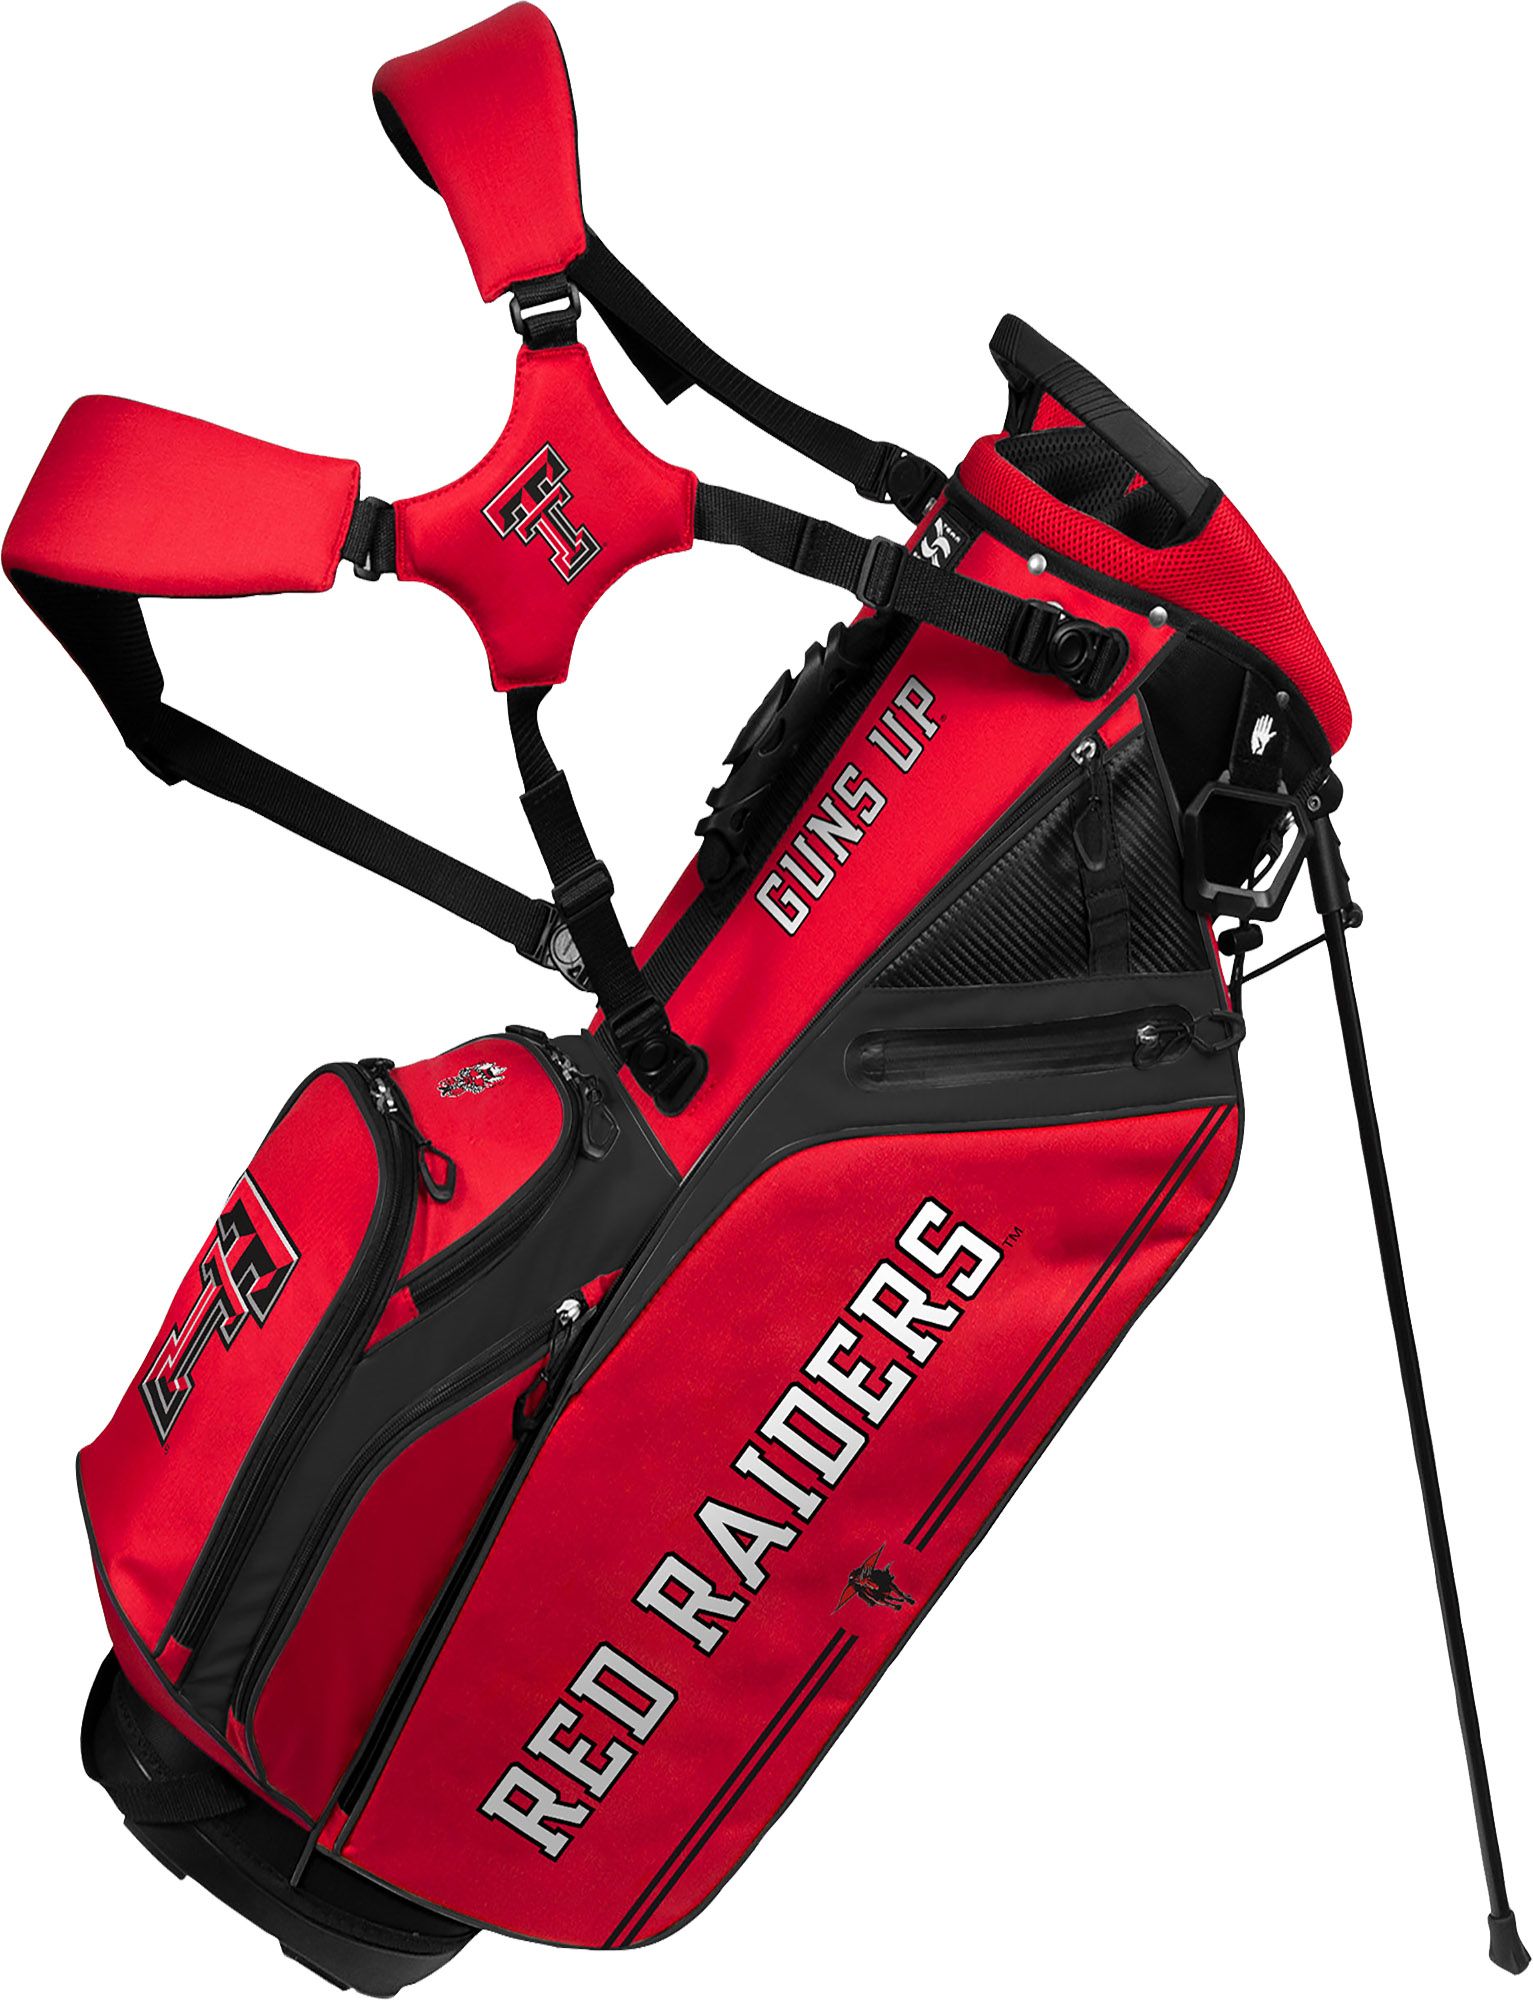 Red Raiders golf gear